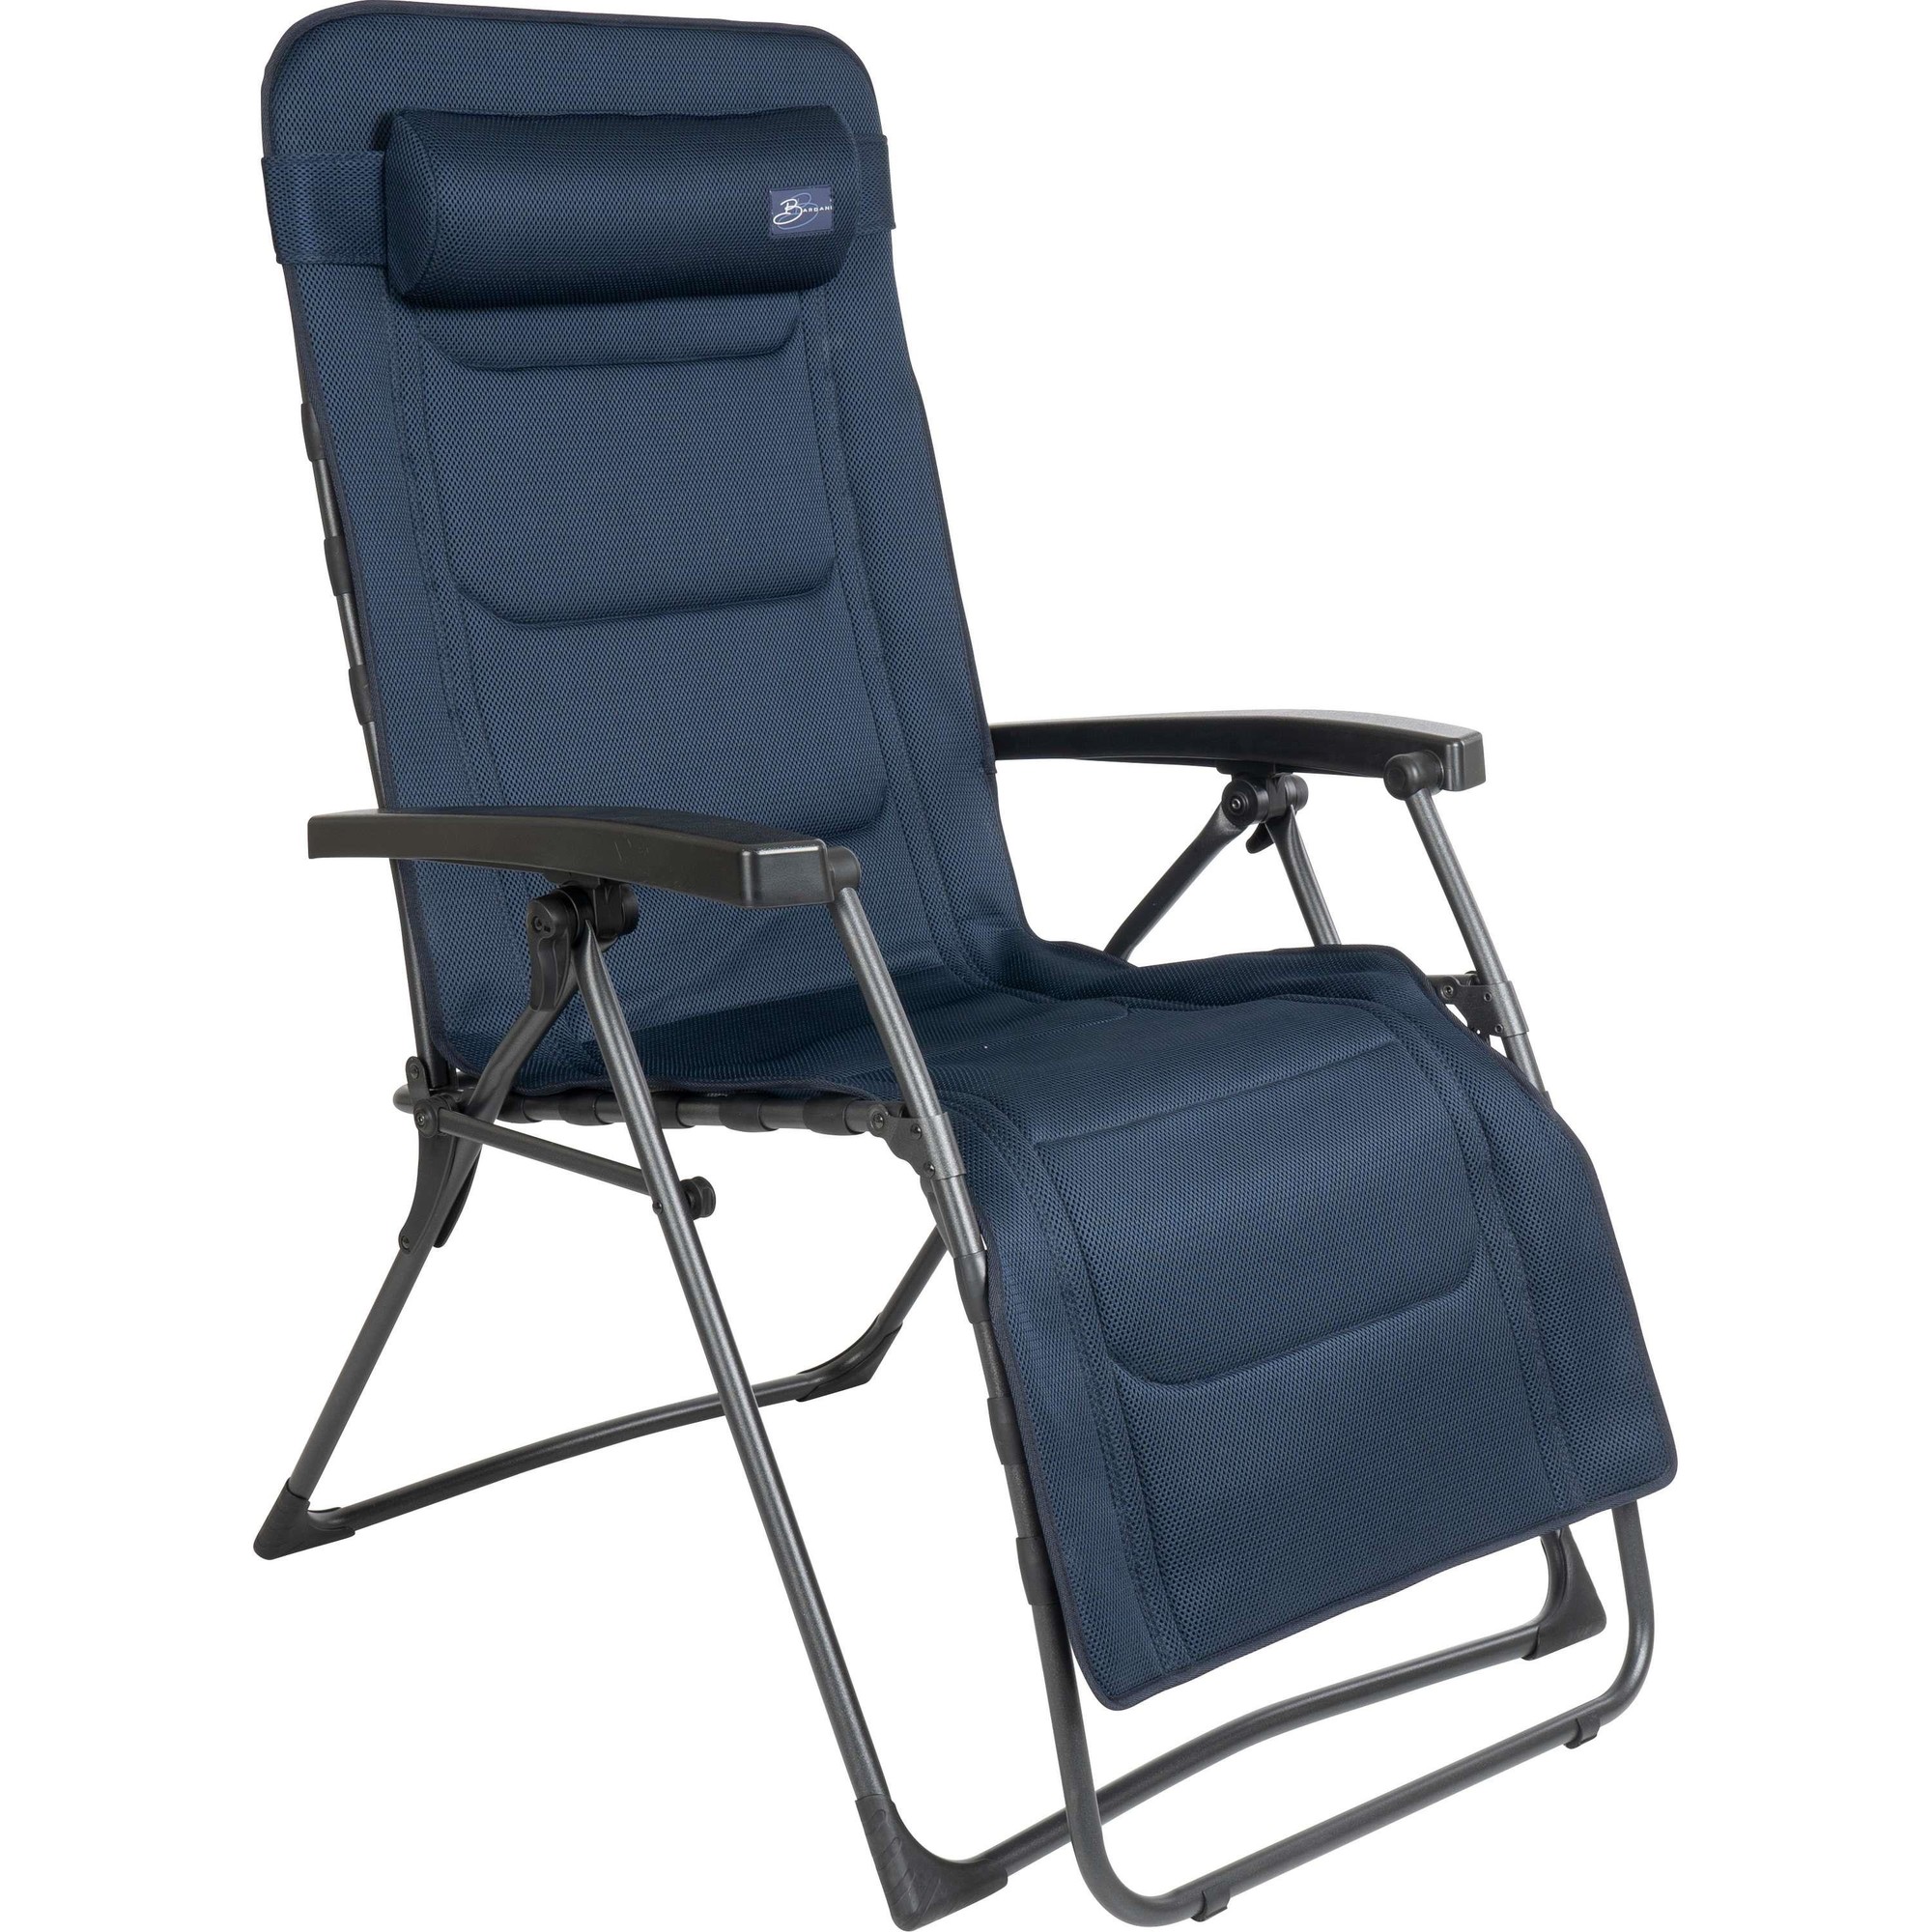 zo veel cijfer auteursrechten Bardani Riposo Clip 3D Comfort relaxstoel moonlight blue